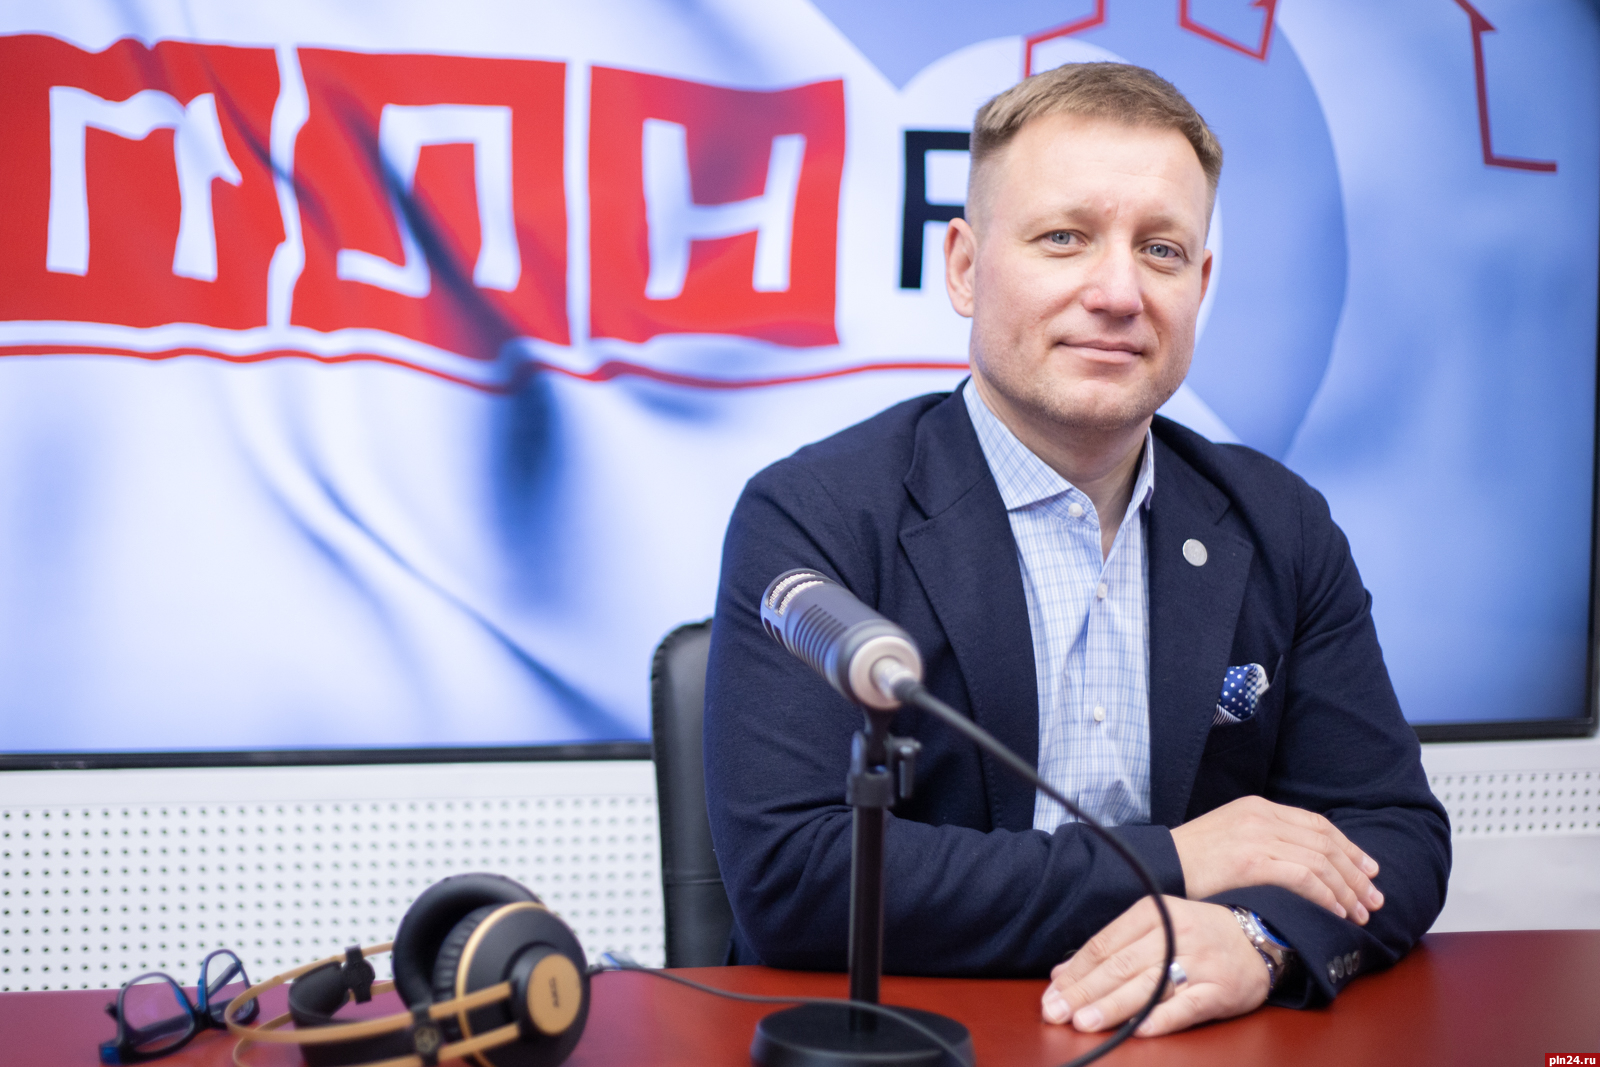 Одной из политических партий отказали в регистрации списка наблюдателей в Пскове и Новосокольниках